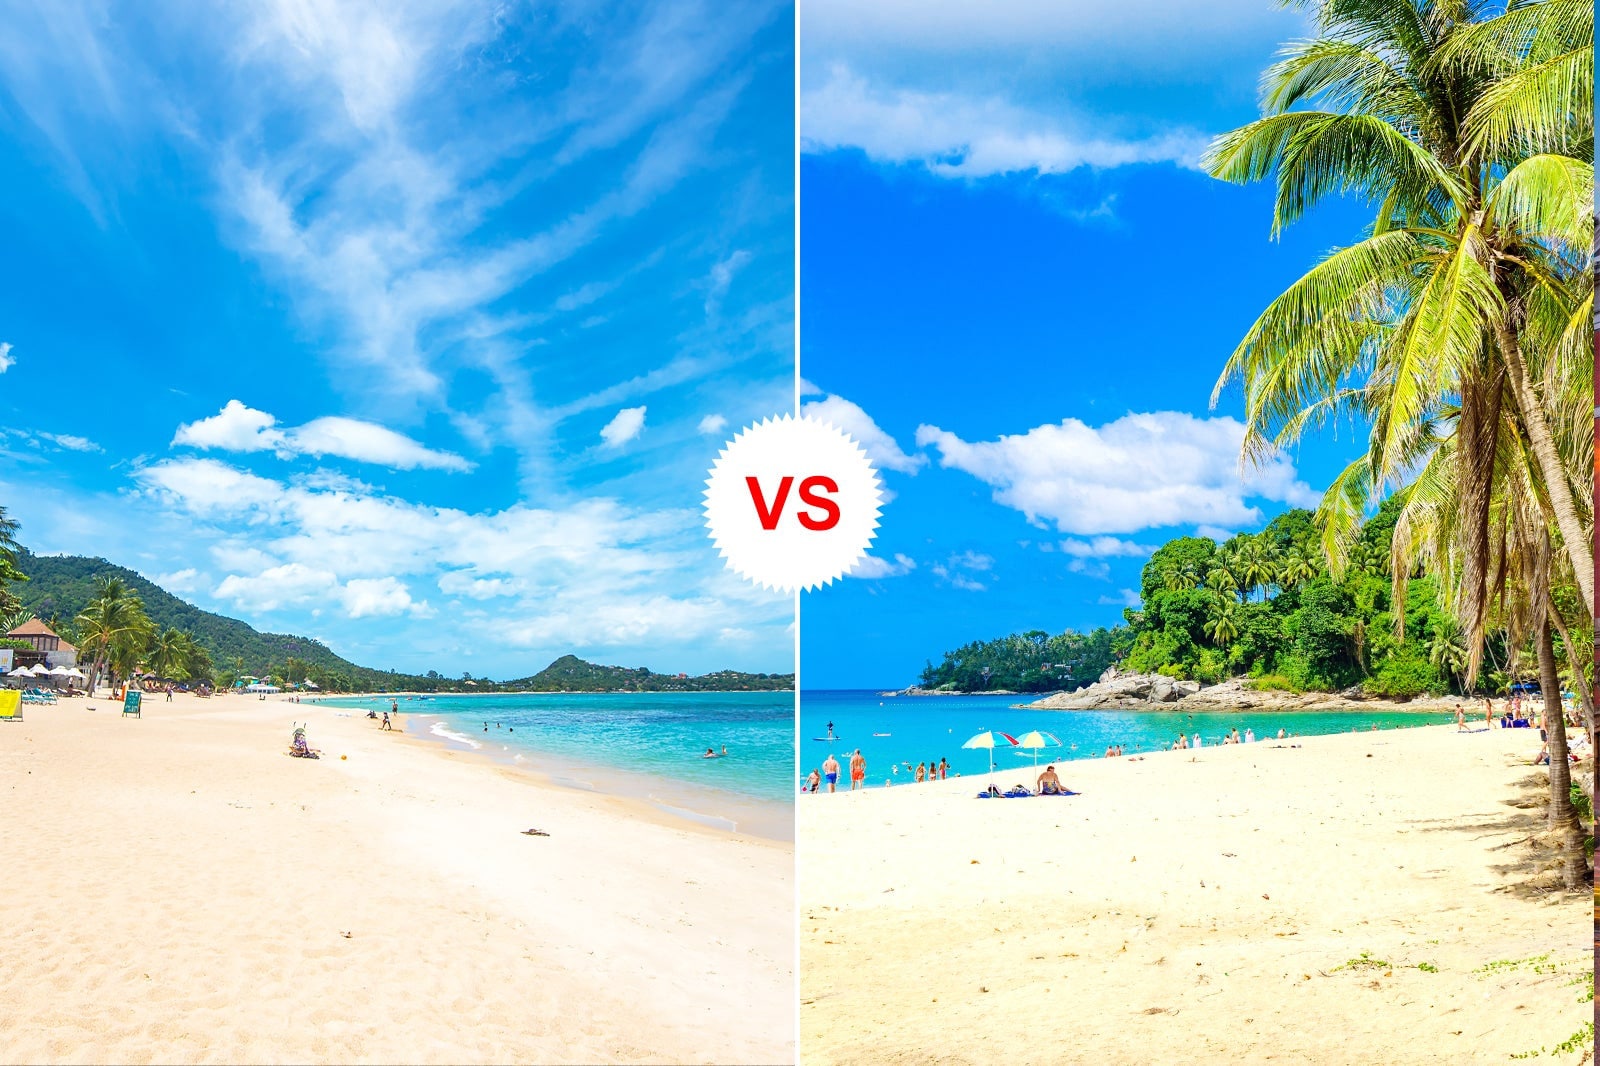 Phuket Vs. Koh Samui: Which is better?